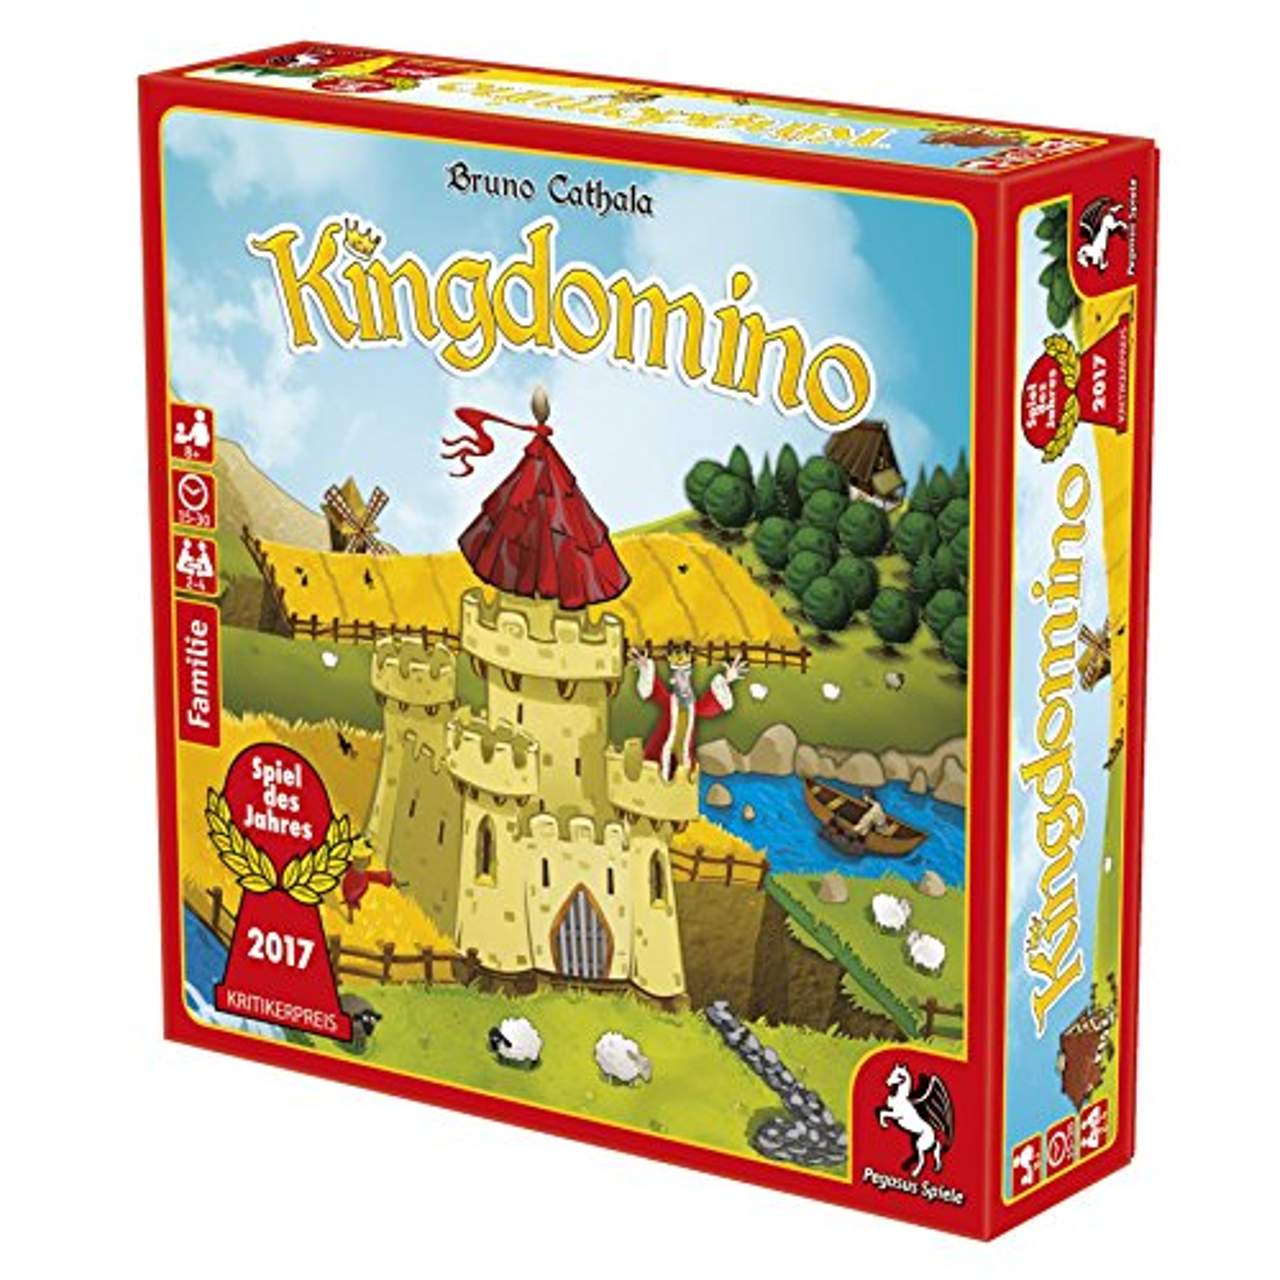  Kingdomino Spiel des Jahres 2017